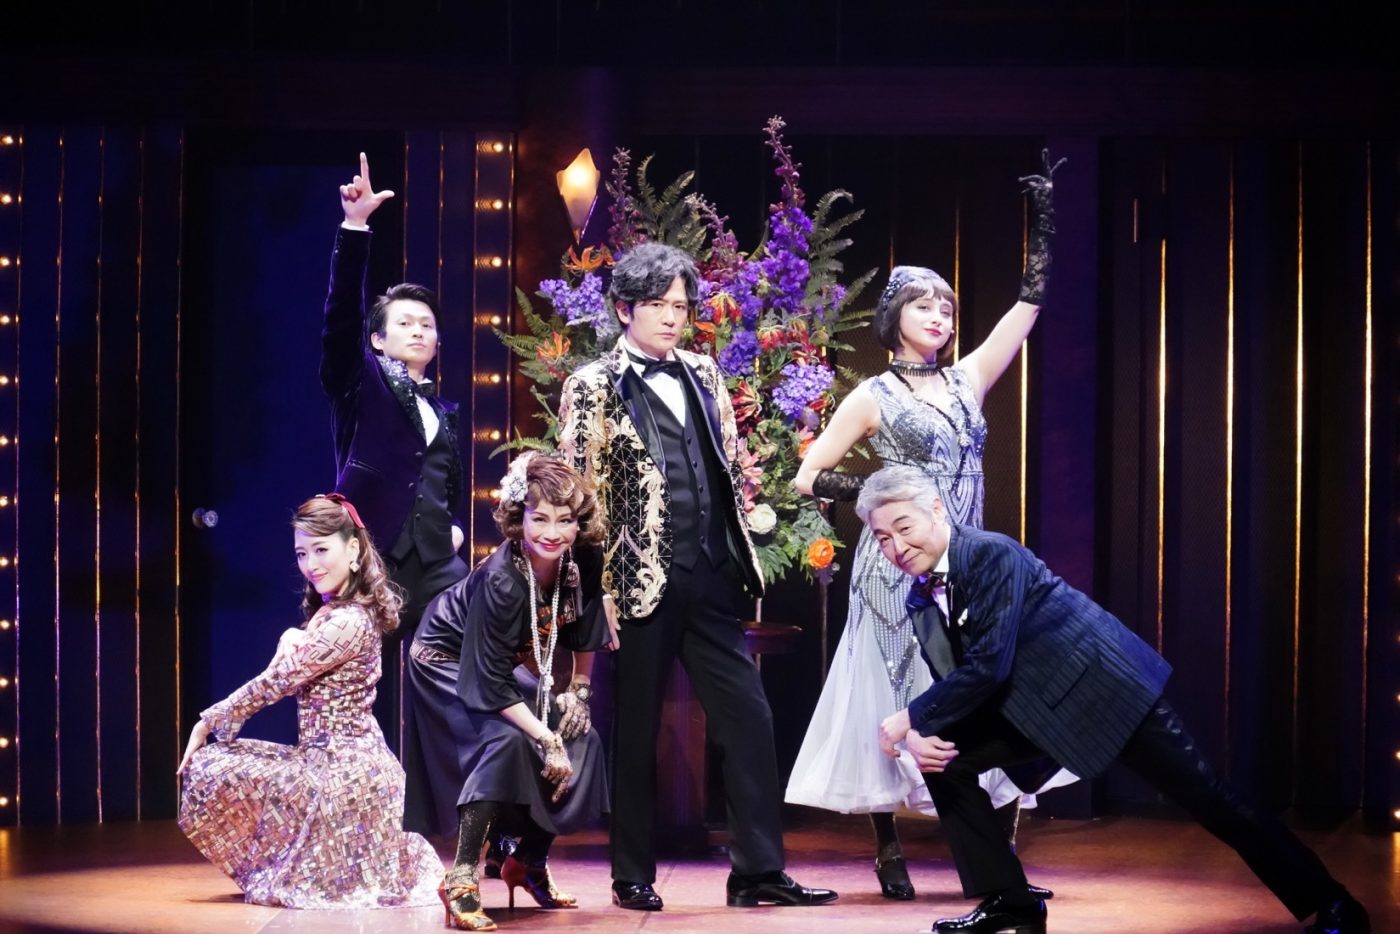 稲垣吾郎、ミュージカル・コメディ『恋のすべて』京都劇場公演が開幕。「初夏のいい思い出をつくれたら」